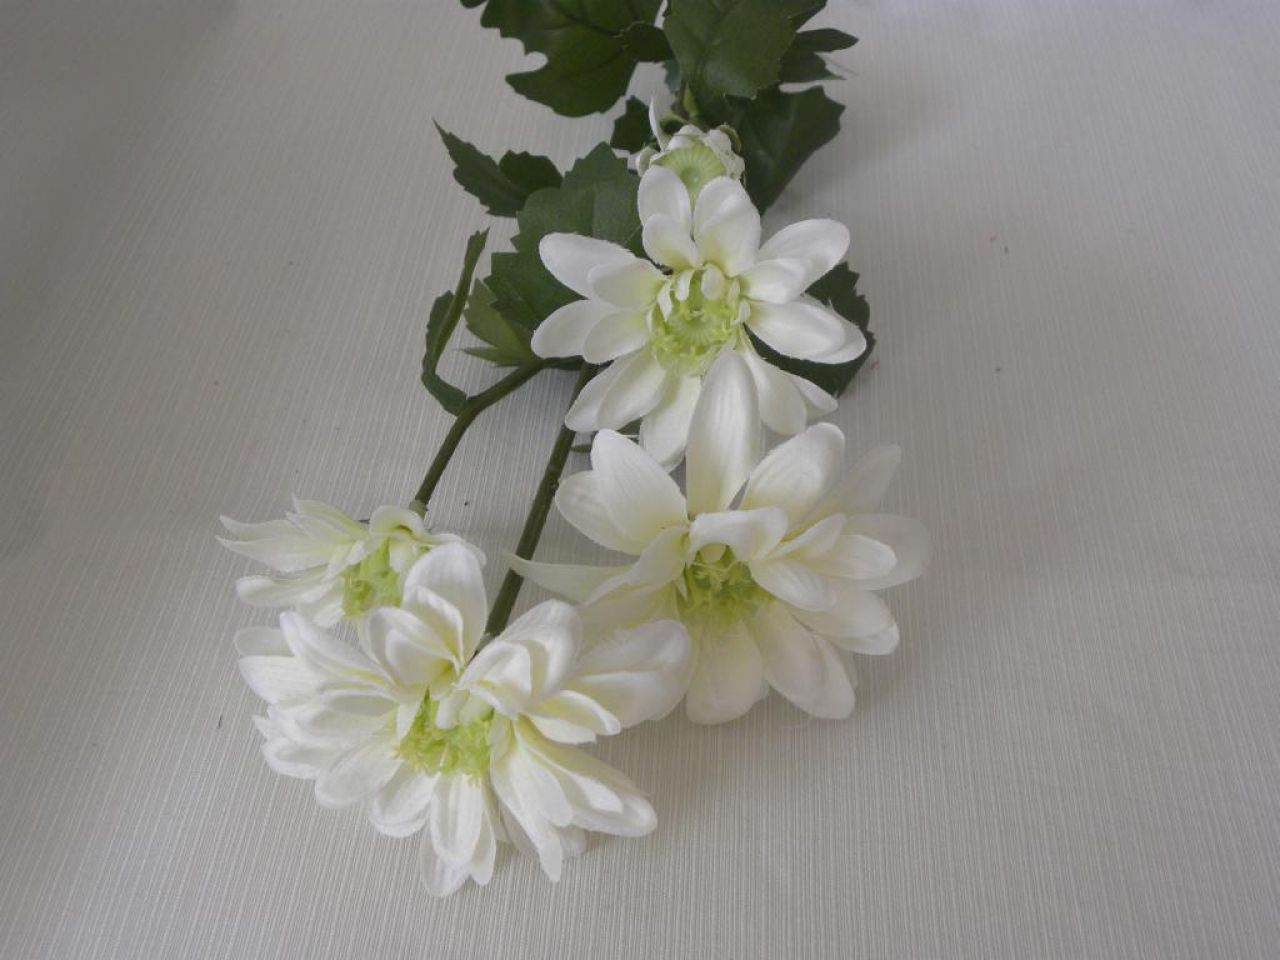 chryzantéma pěkná bílá posl. 1 ks skladem